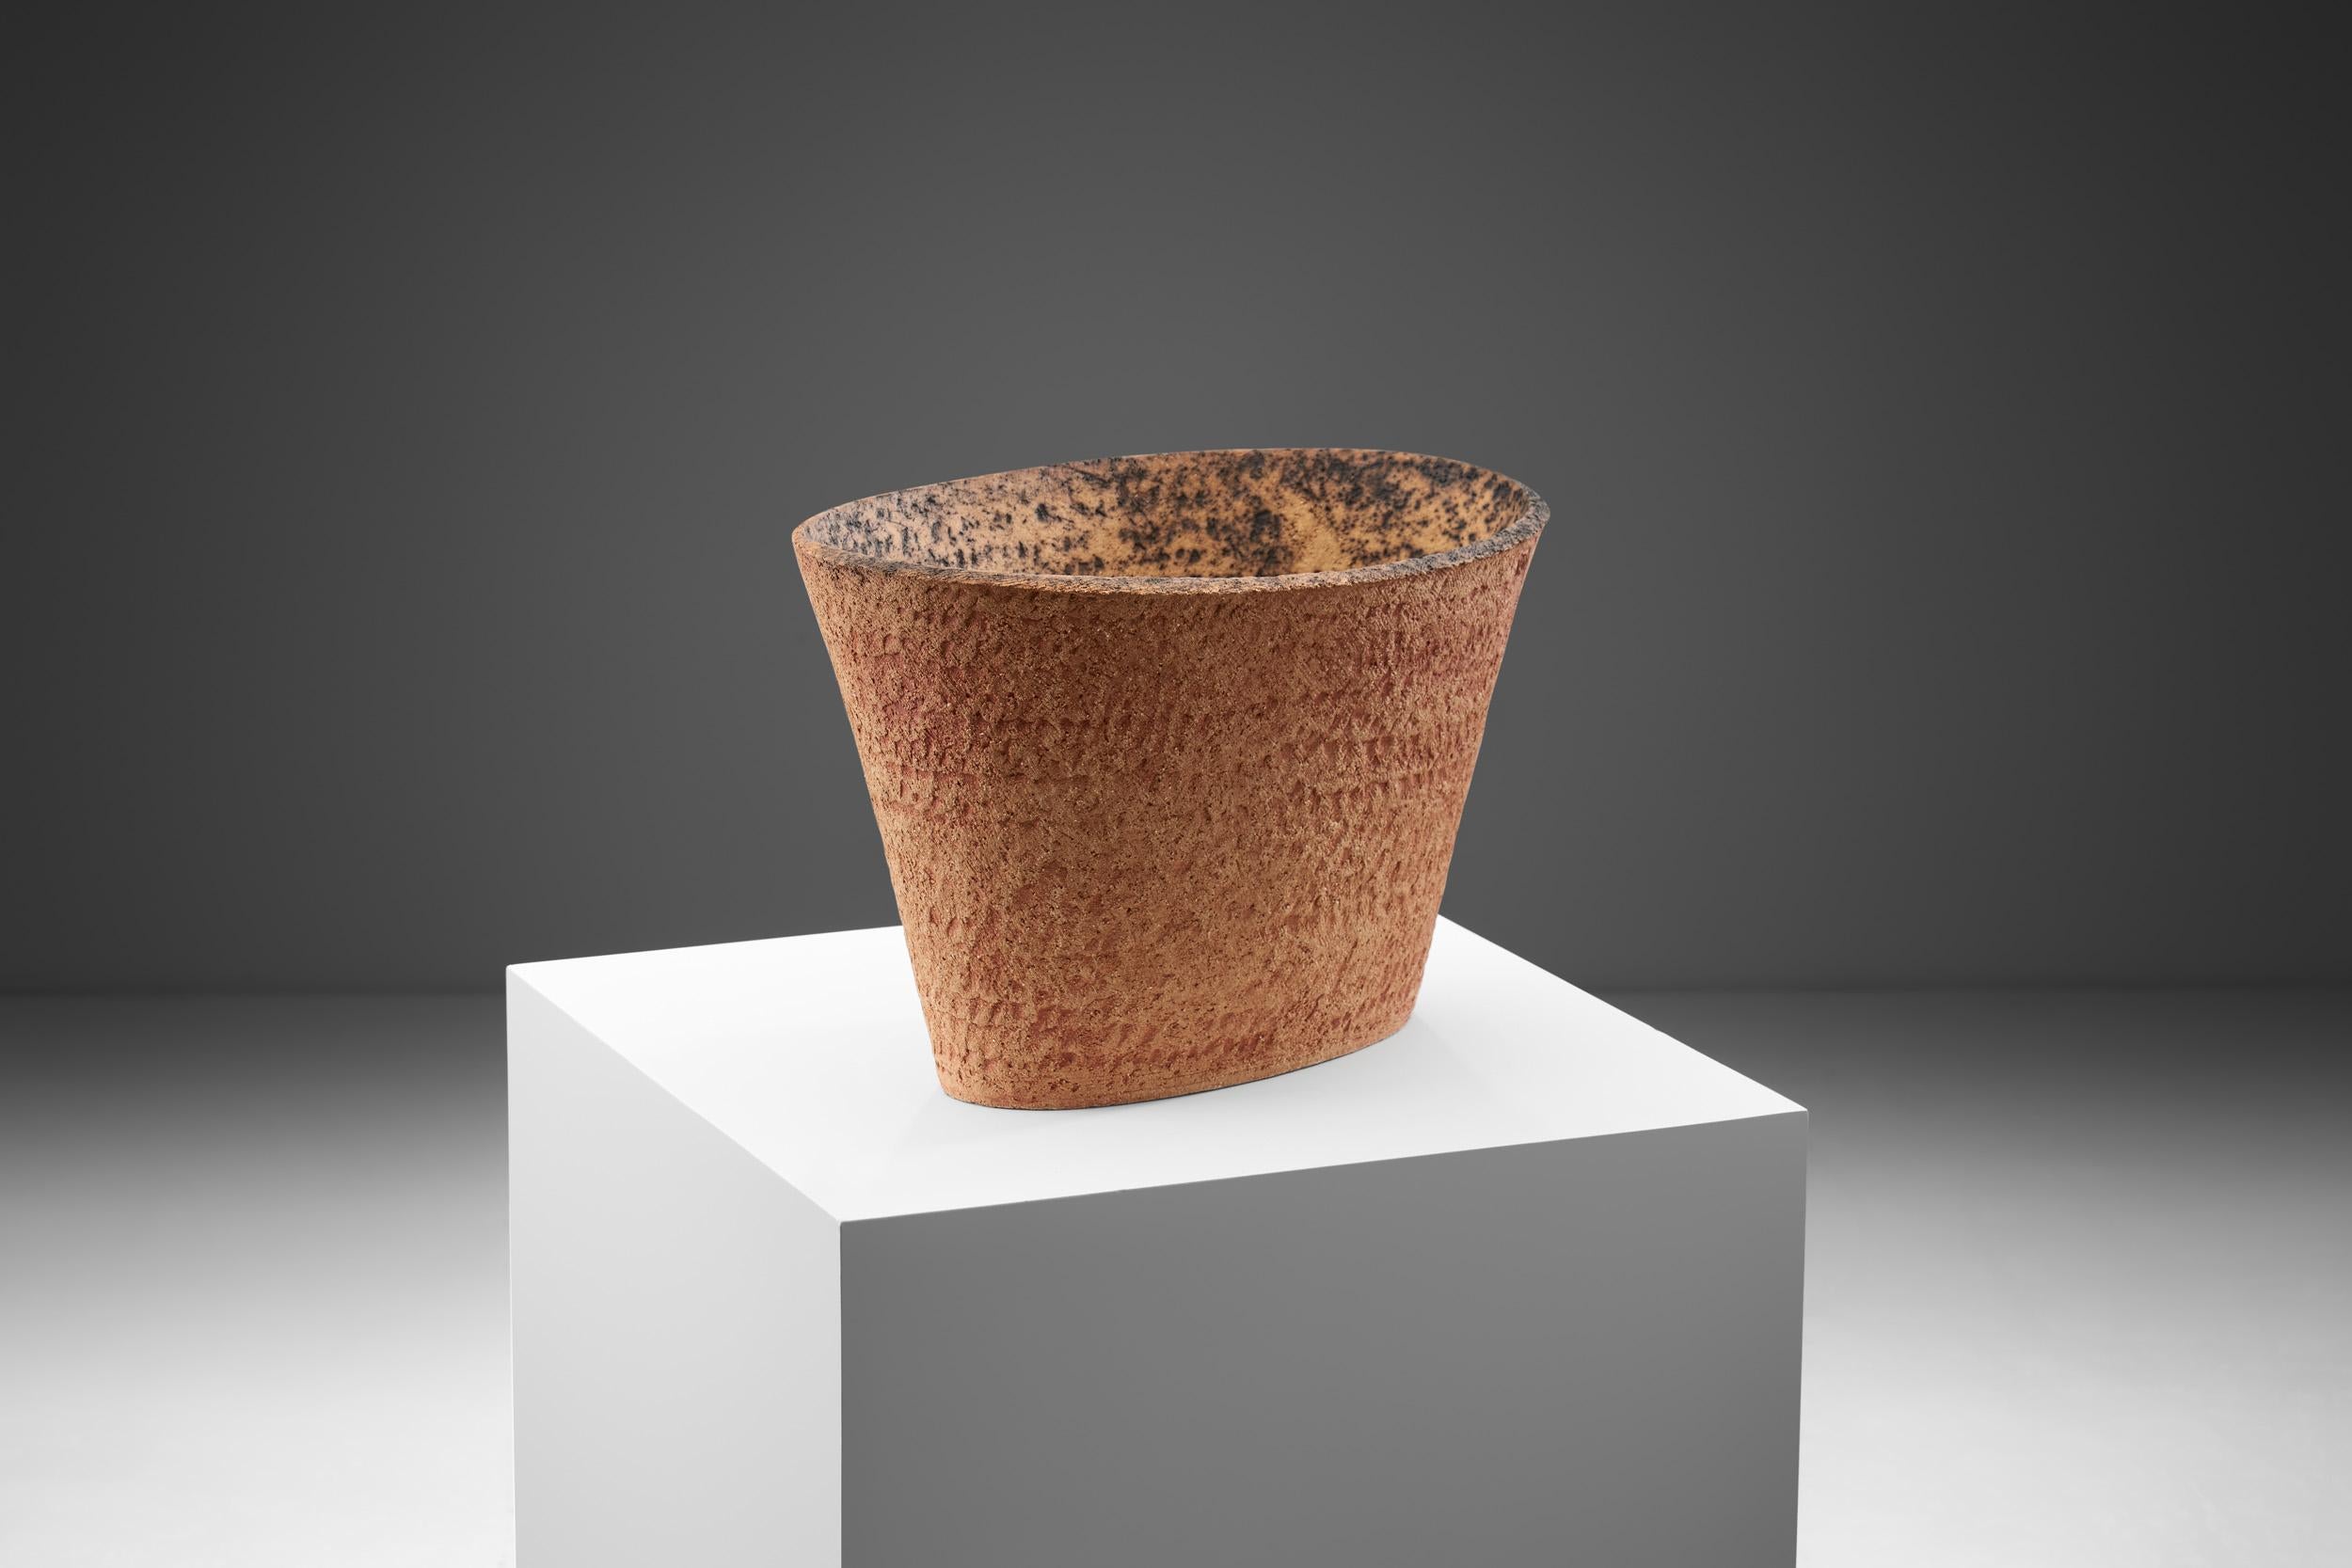 Mid-Century Modern Kati Tuominen-Niittylä Contemporary Ceramic Bowl, Finland 21st Century For Sale